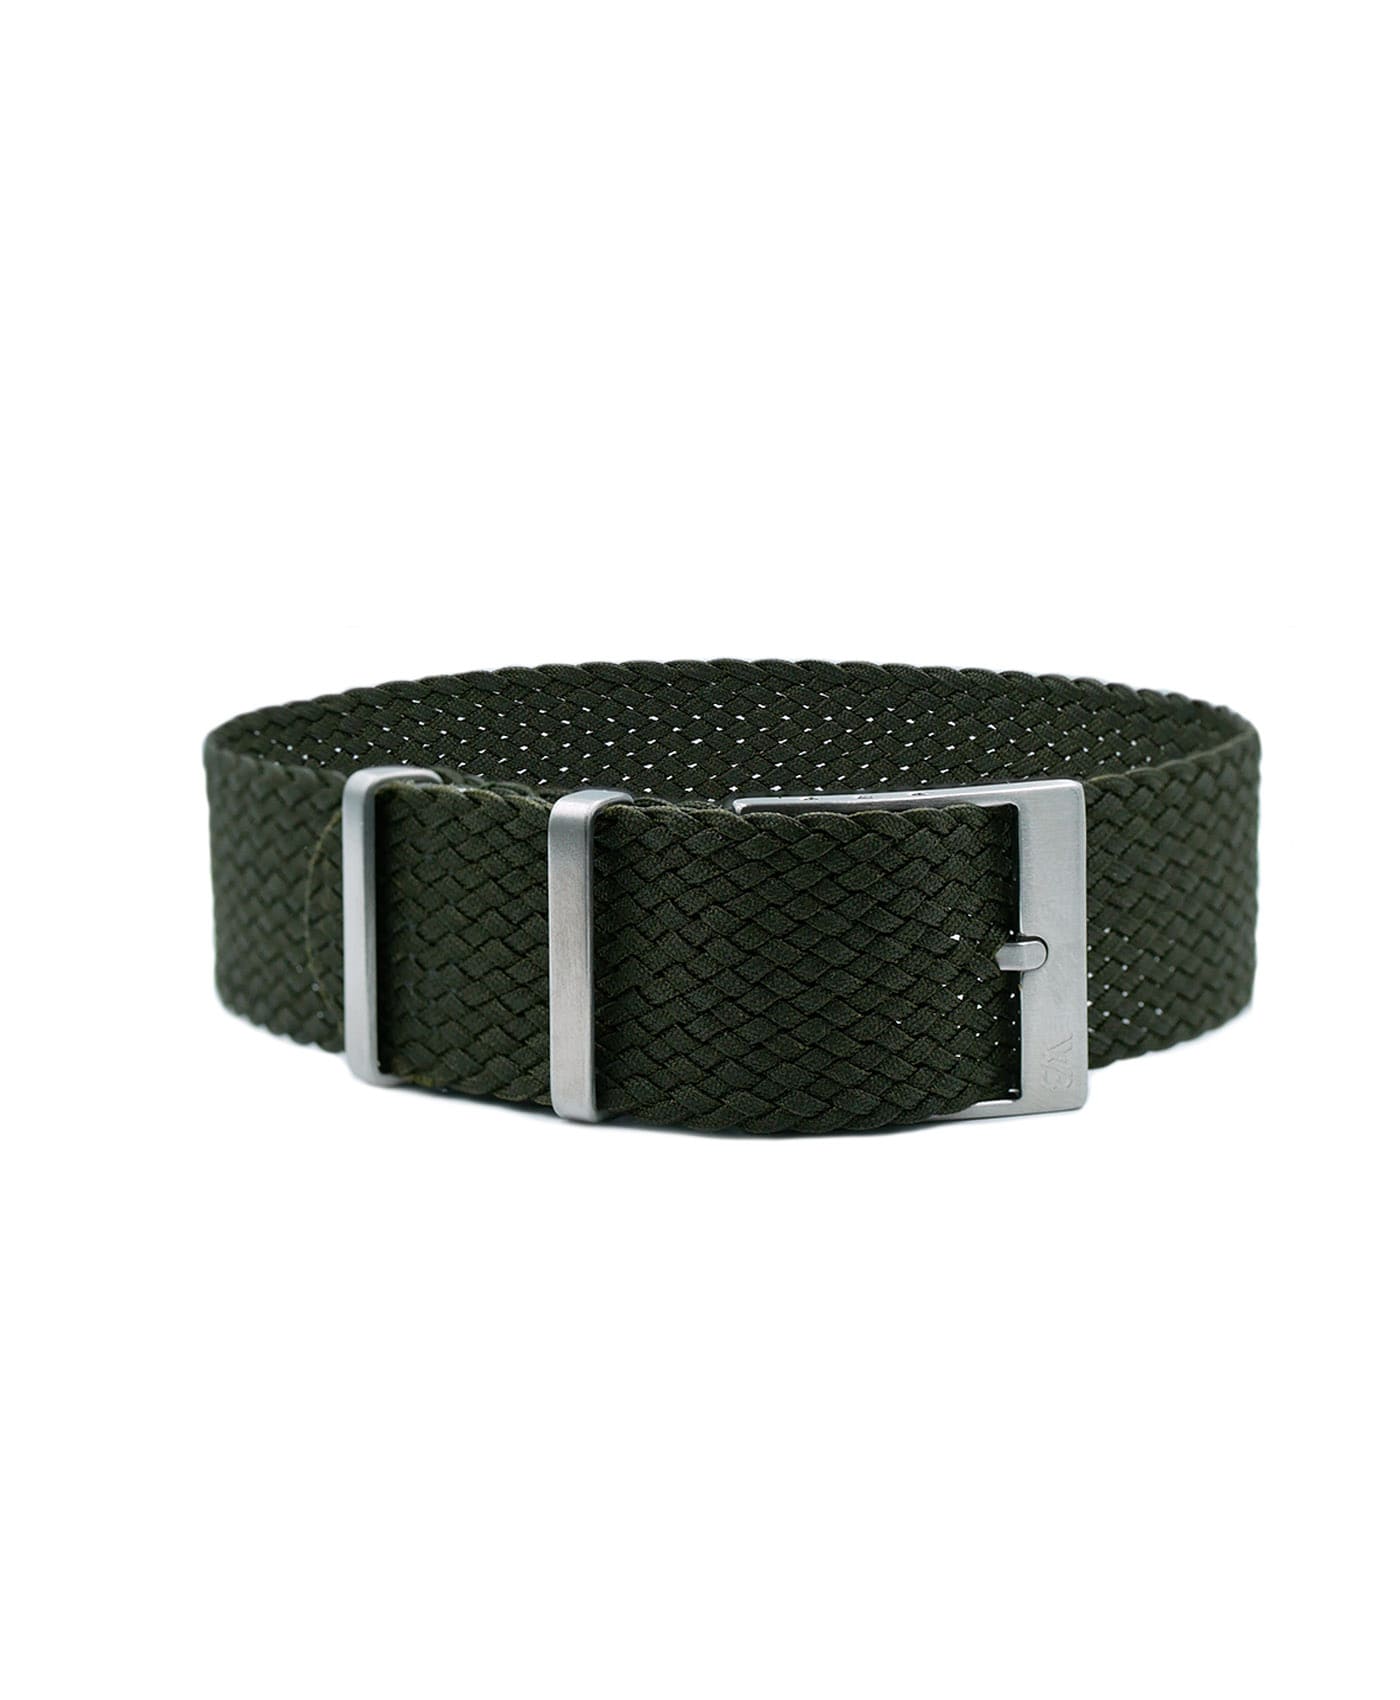 Watchbandit Premium Perlon Watch Strap - Olive green